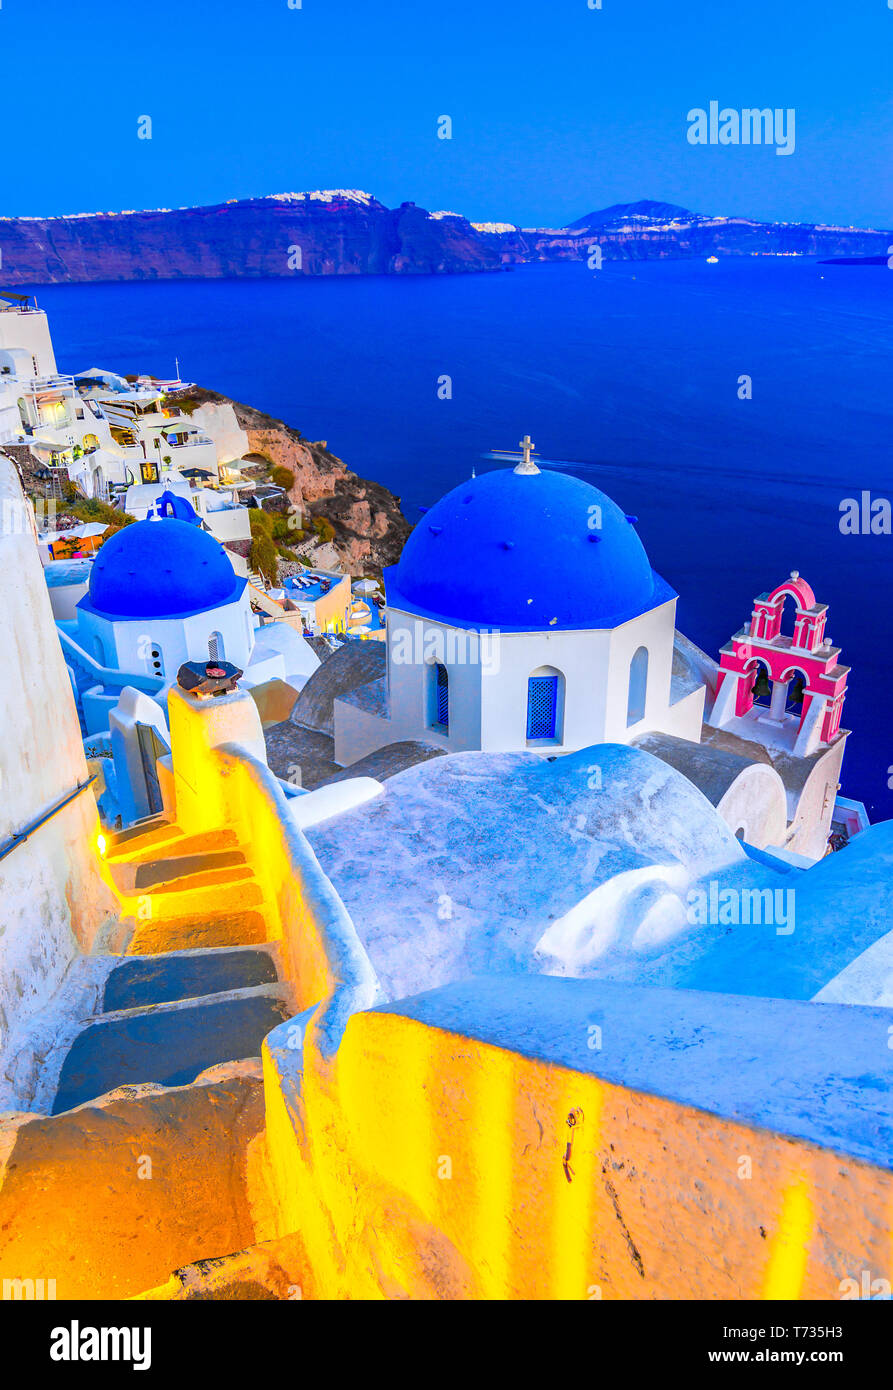 Oia, isla de Santorini, Grecia al atardecer. Famosos y tradicionales casas blancas e iglesias con cúpulas azules a lo largo de la Caldera, el mar Egeo. Foto de stock